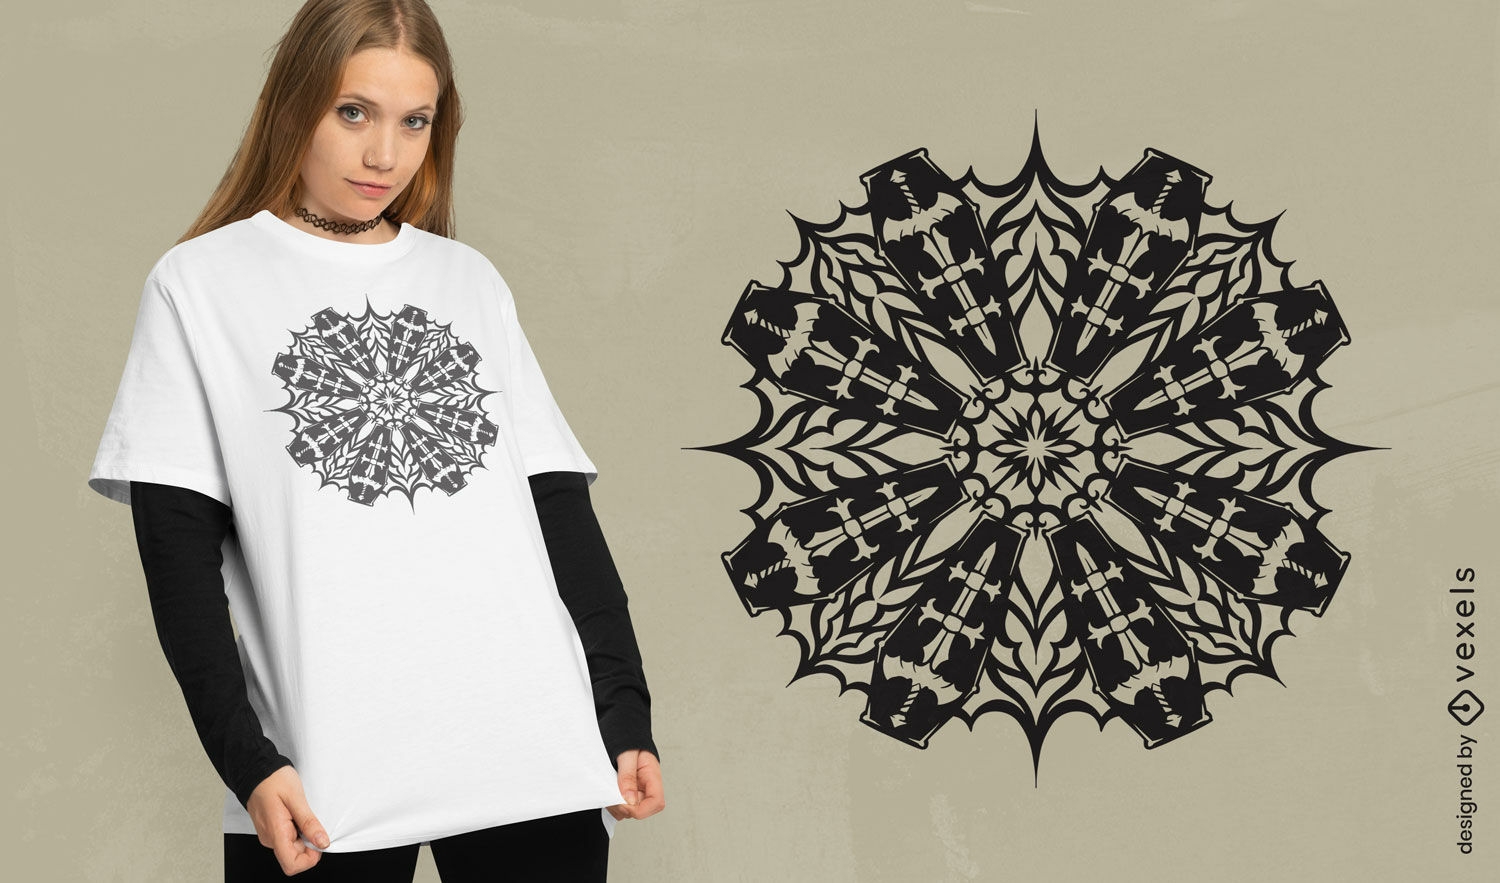 Diseño de camiseta con estampado de ataúdes góticos y copos de nieve.